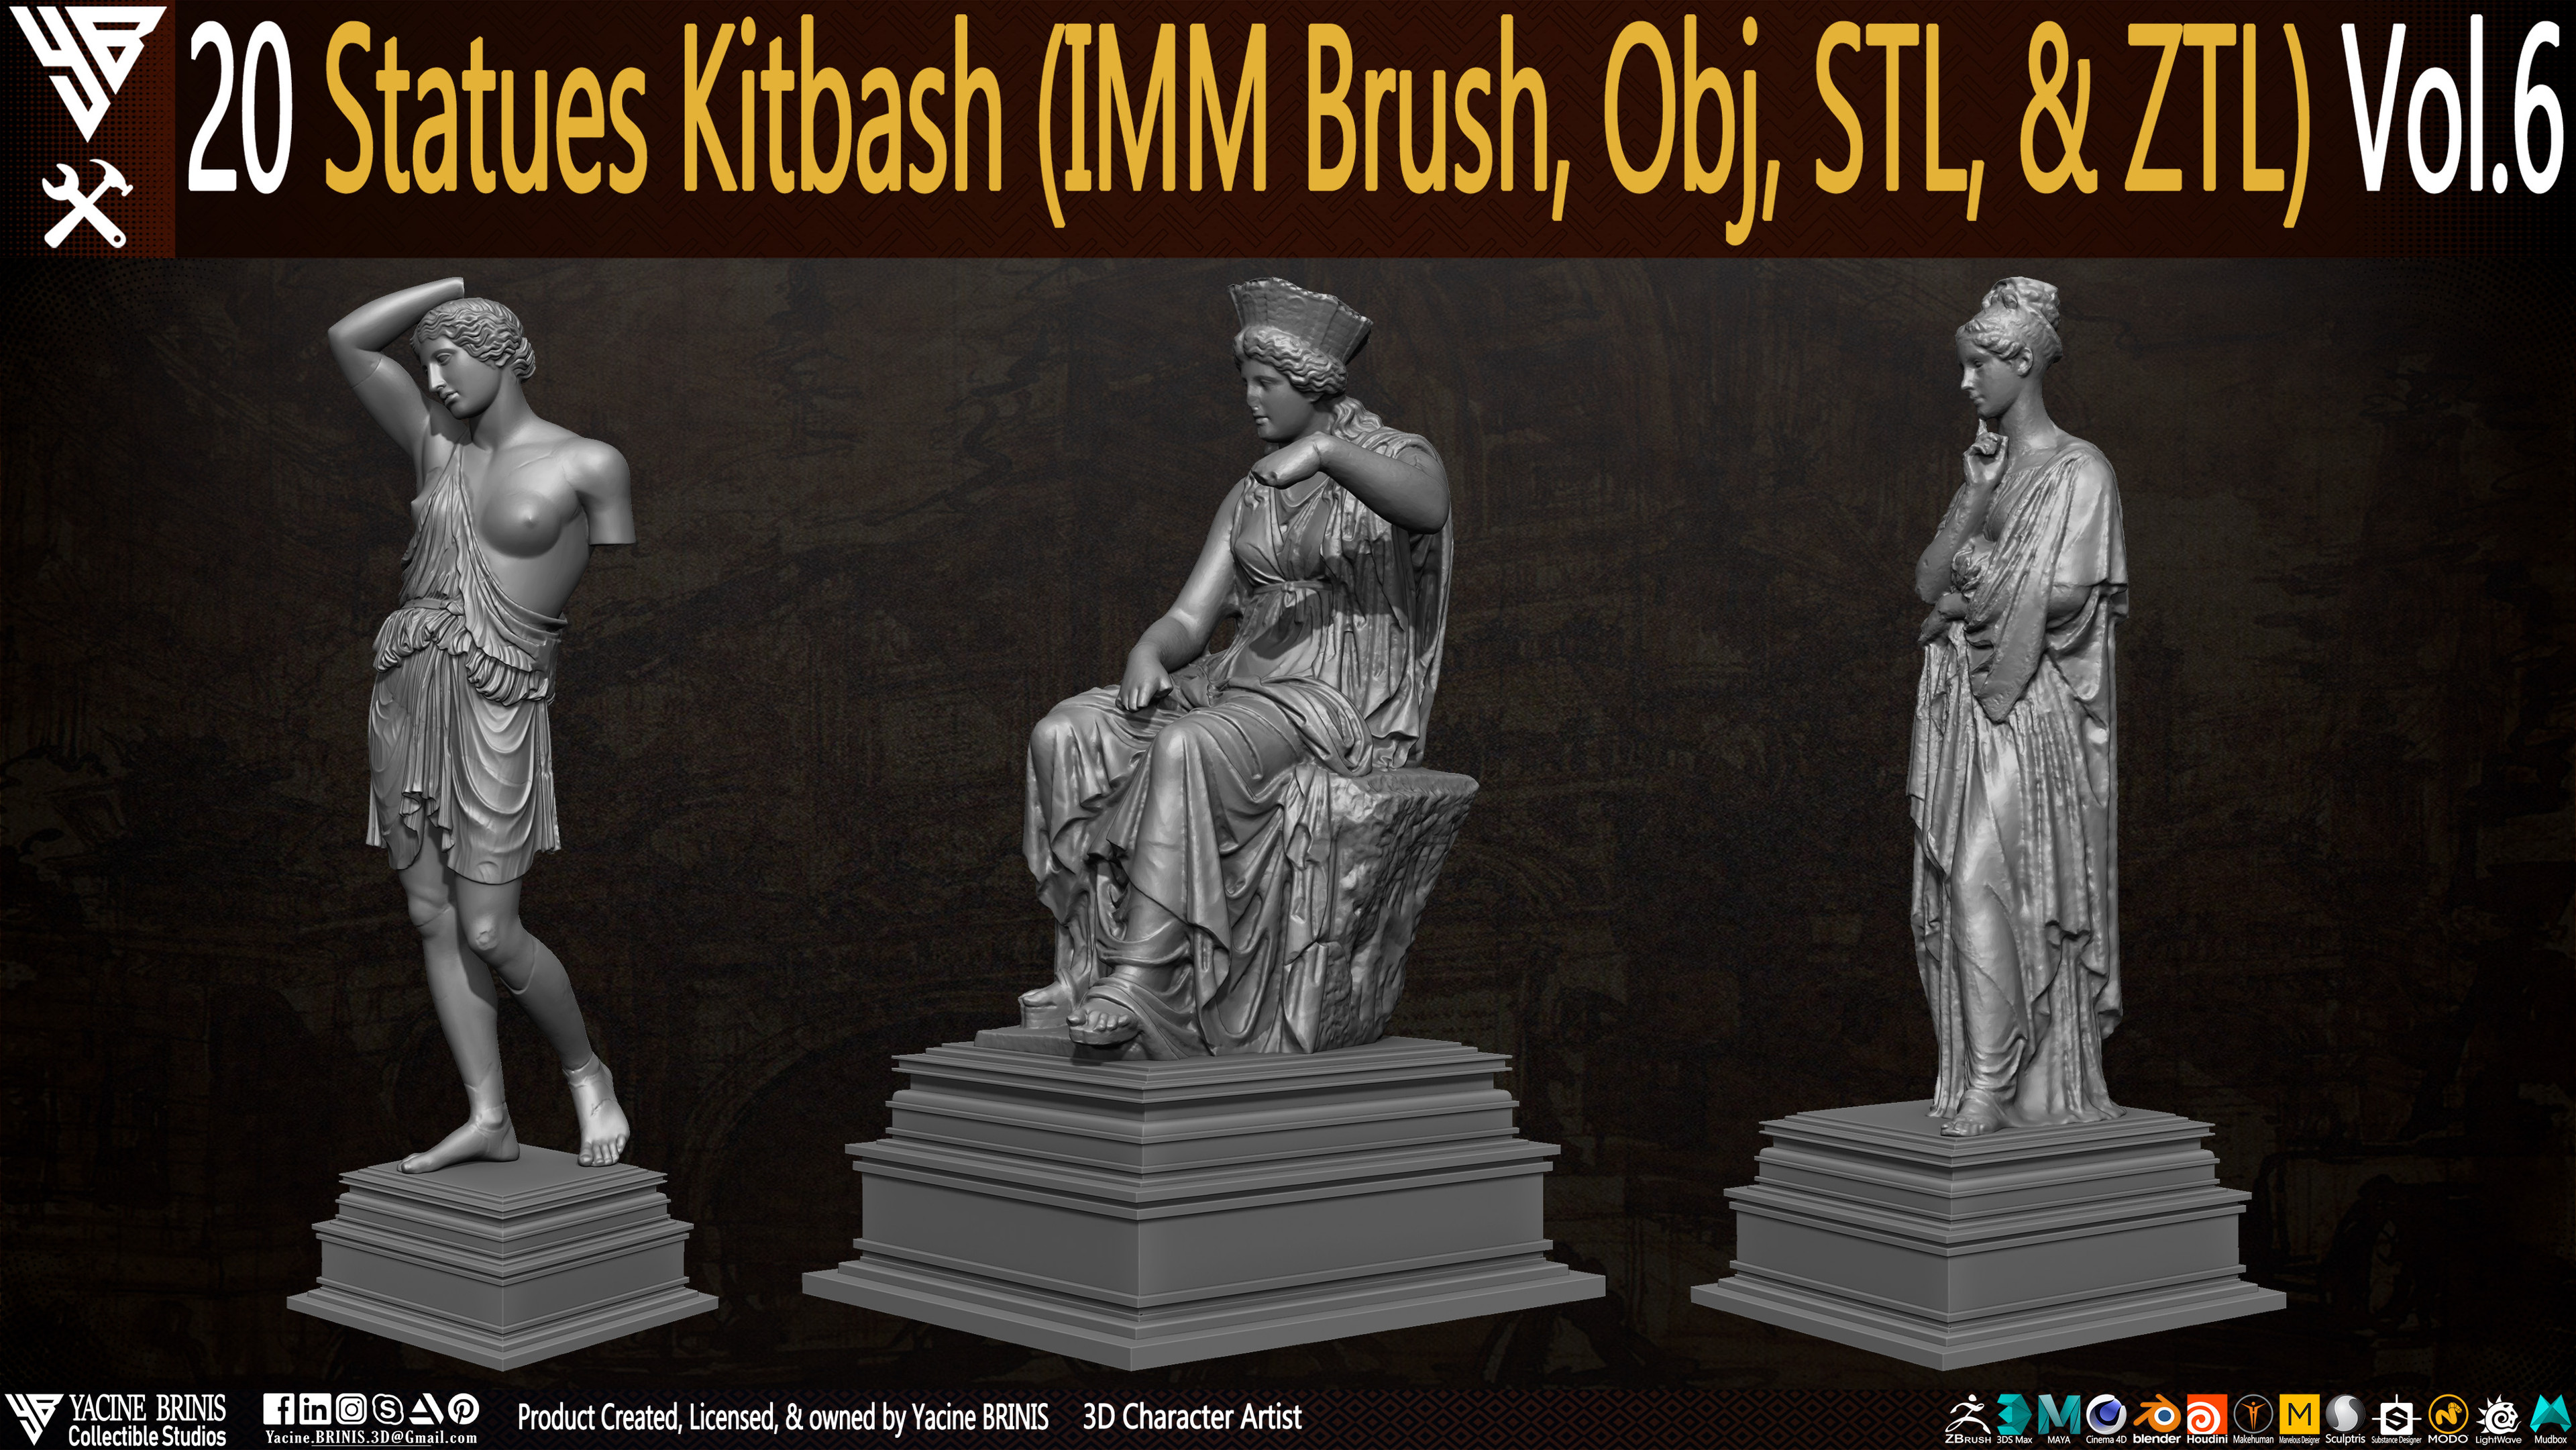 Statues Kitbash by yacine brinis Set 36